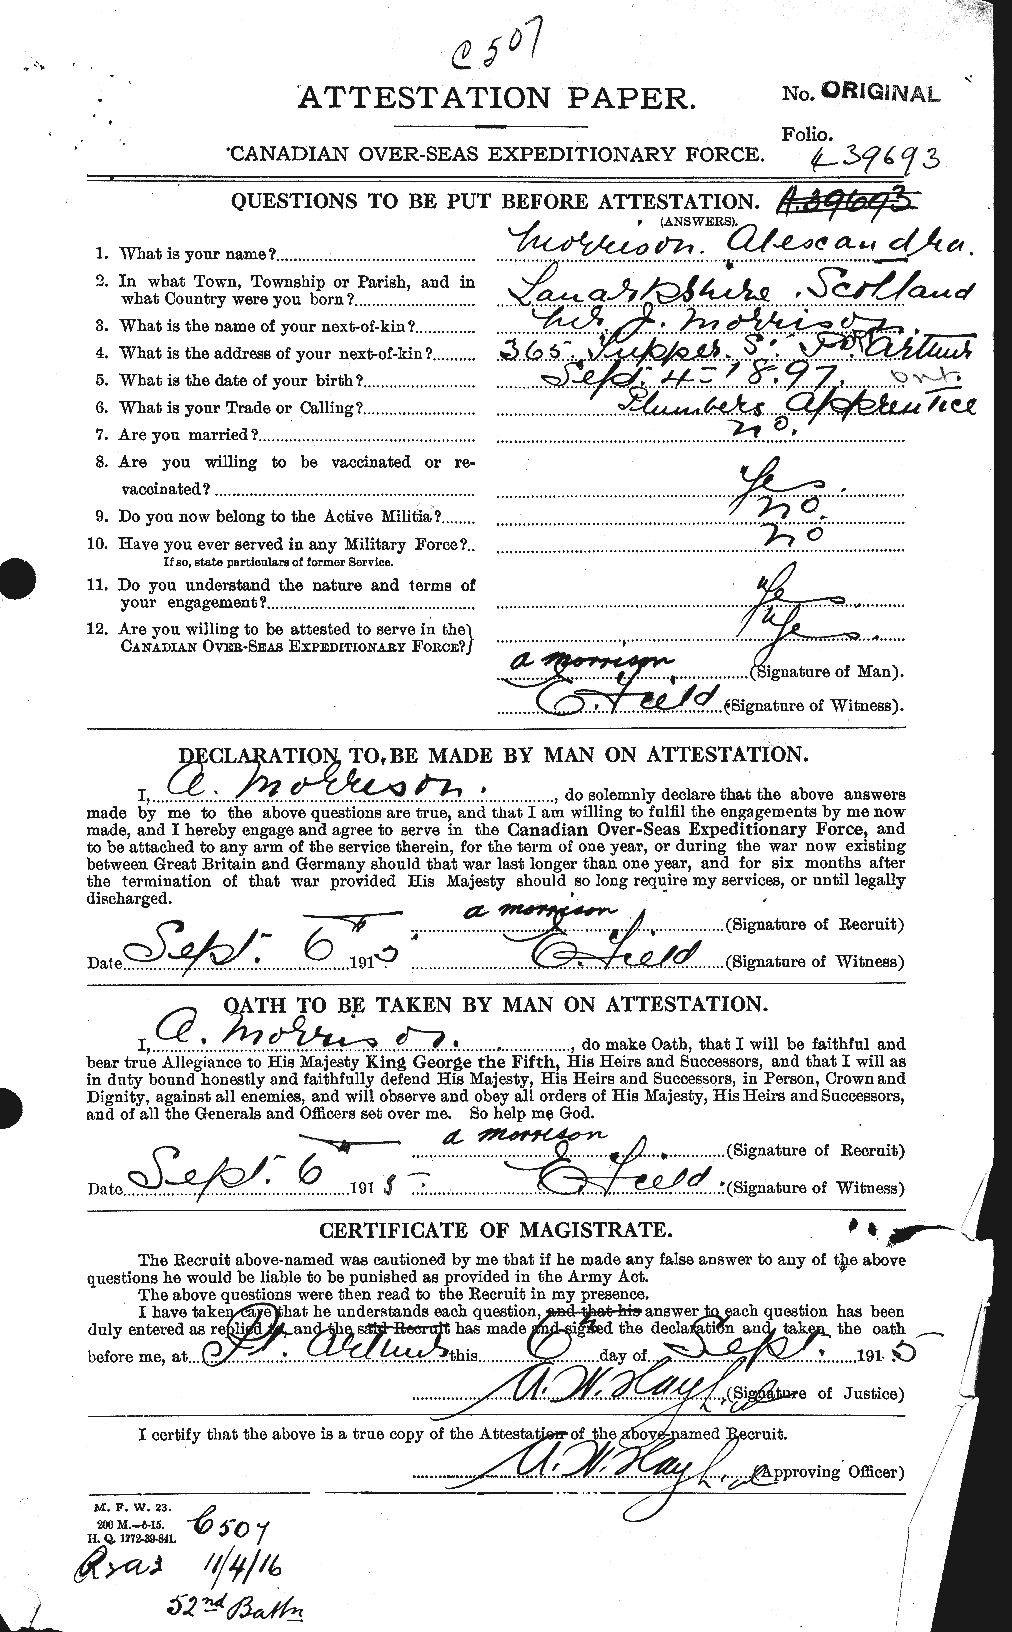 Dossiers du Personnel de la Première Guerre mondiale - CEC 511008a